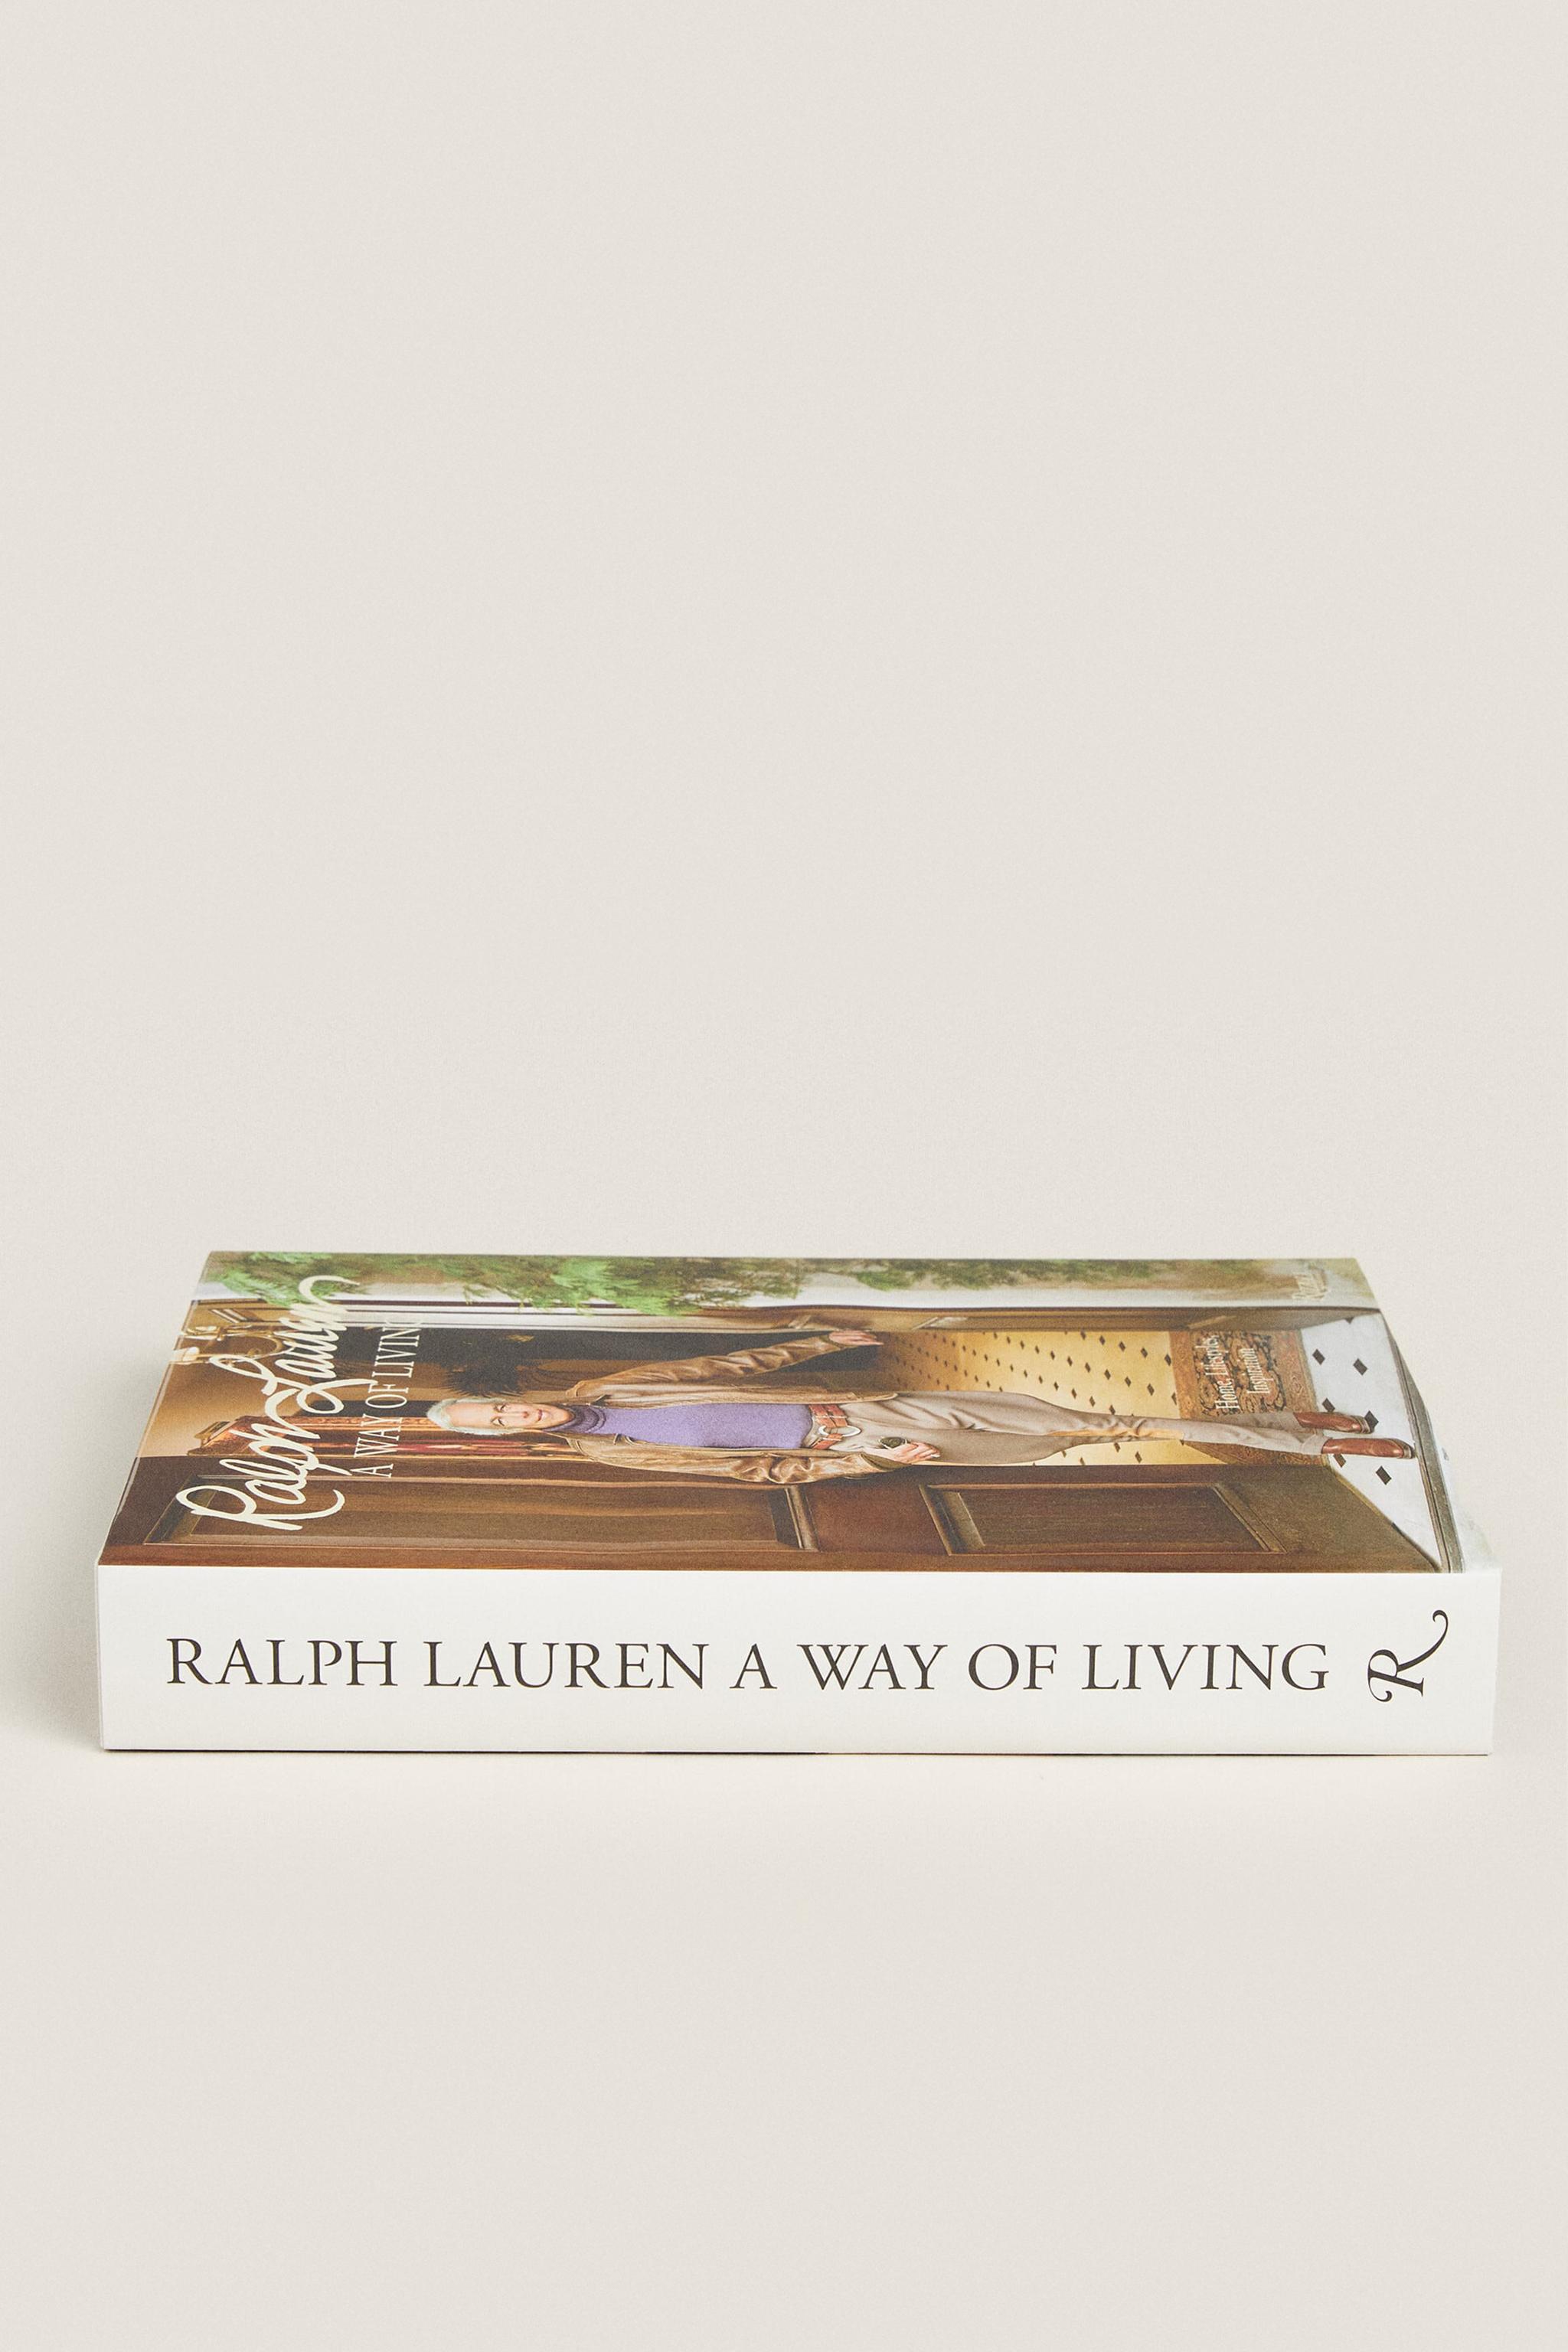 RALPH LAUREN A WAY OF LIVING BOOK